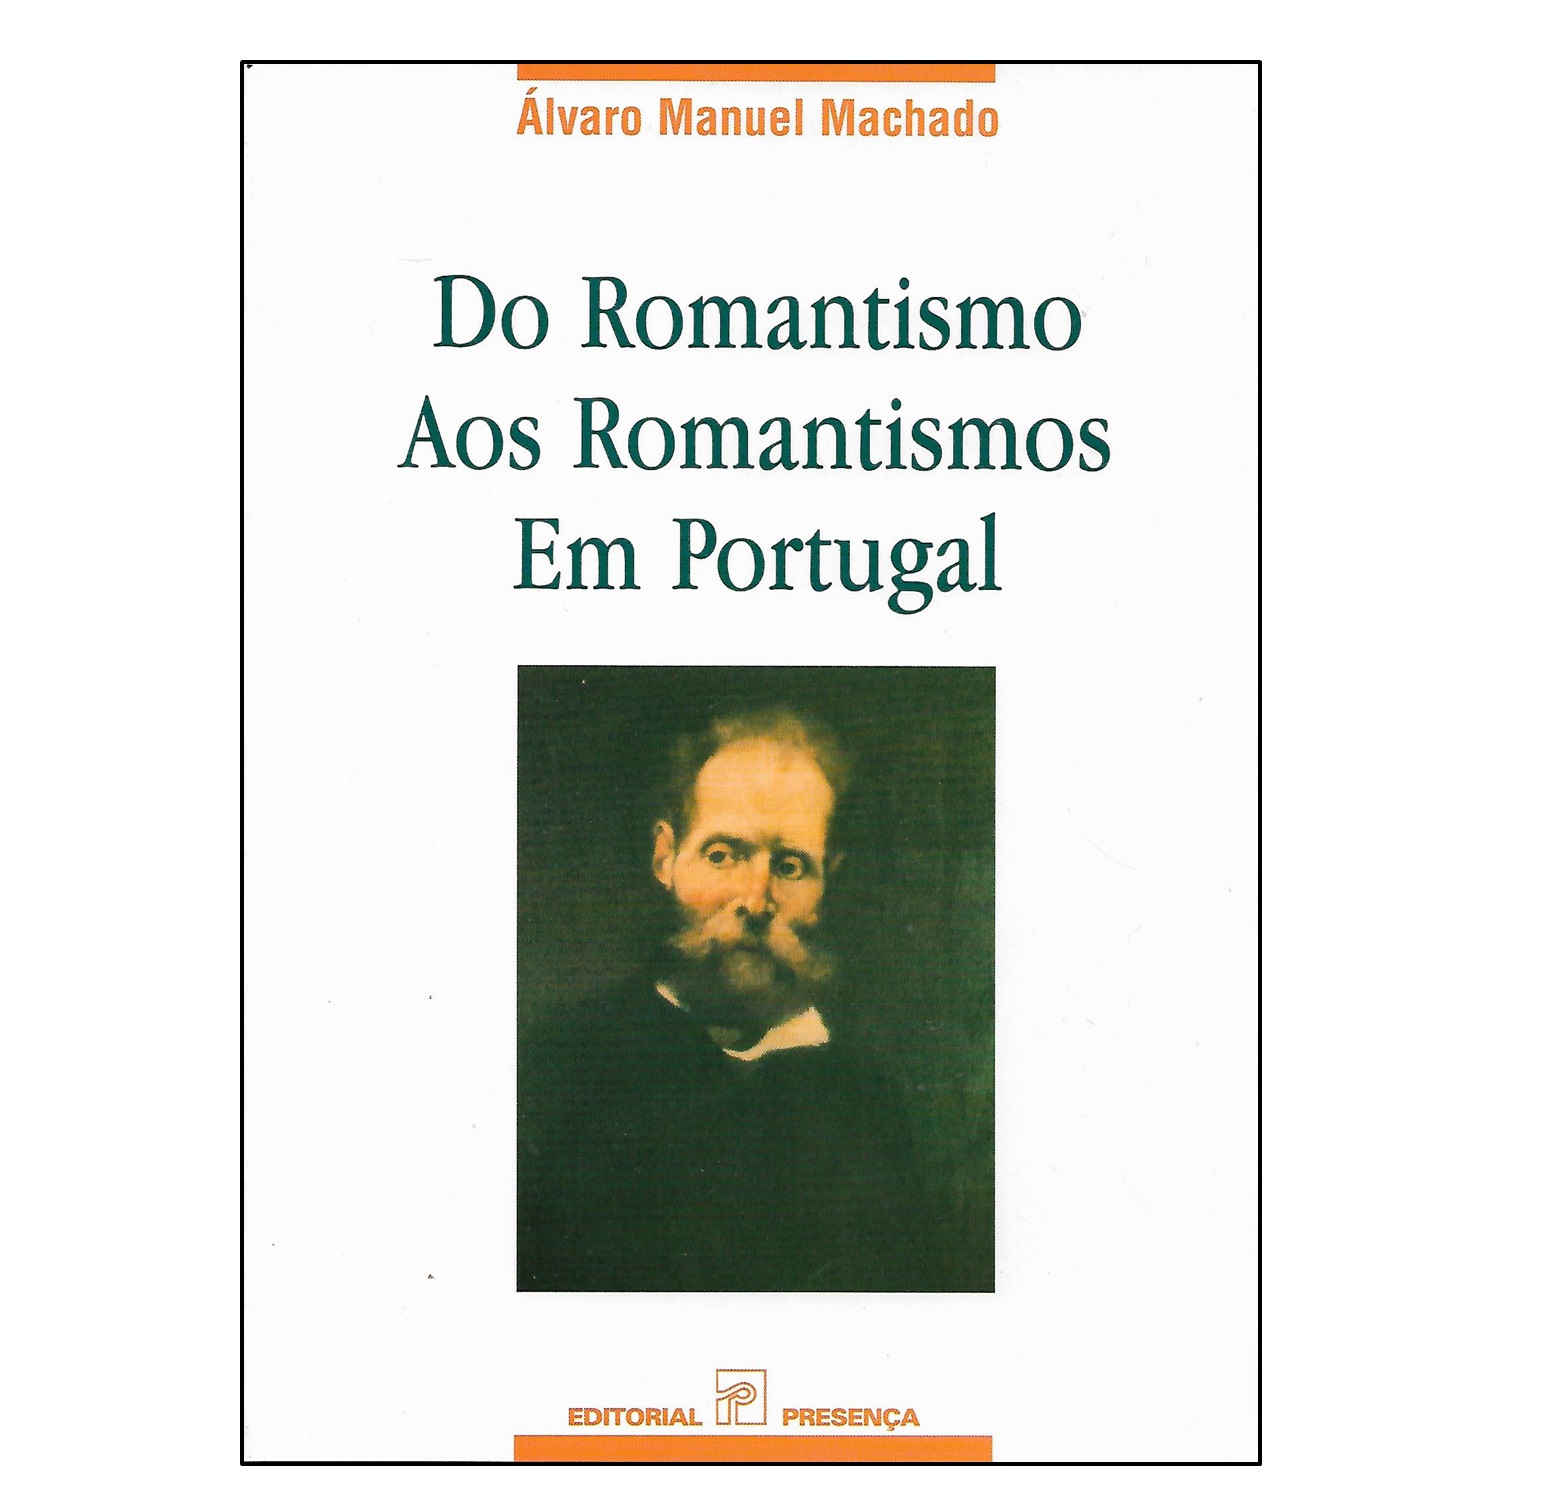 DO ROMANTISMO AOS ROMANTISMOS EM PORTUGAL